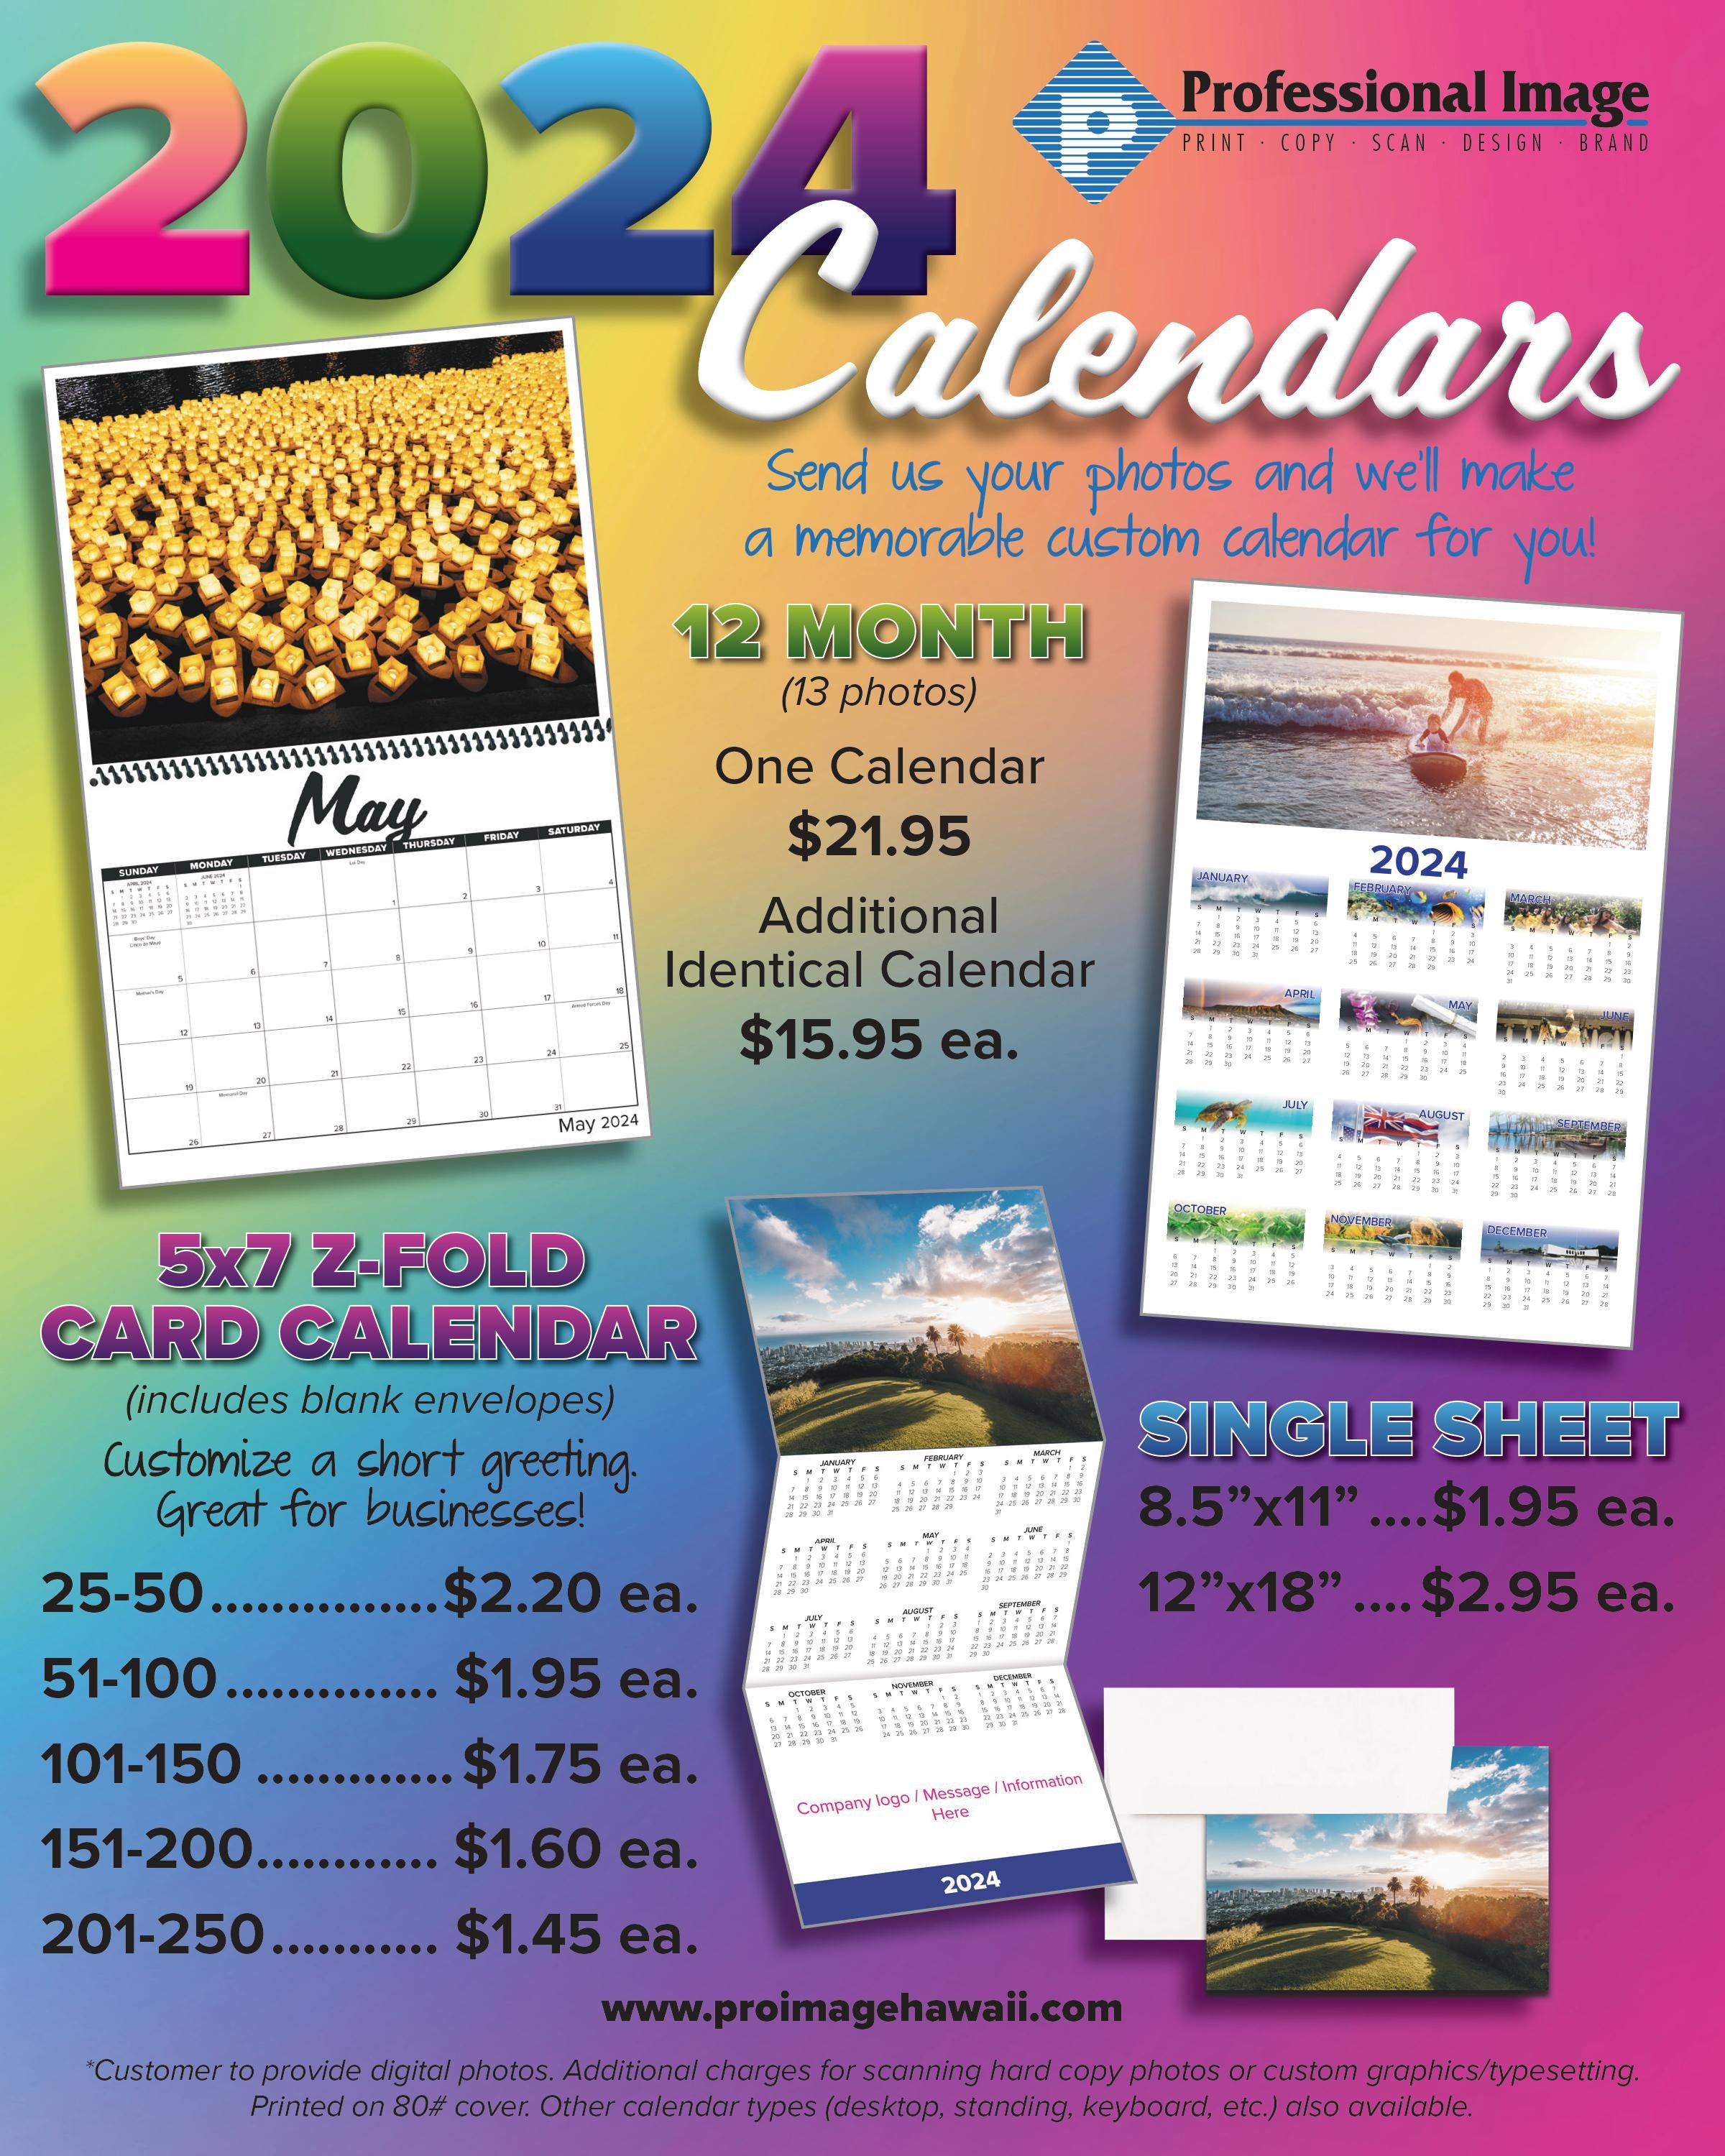 2024 Calendar Promo Flyer 8x10.jpg